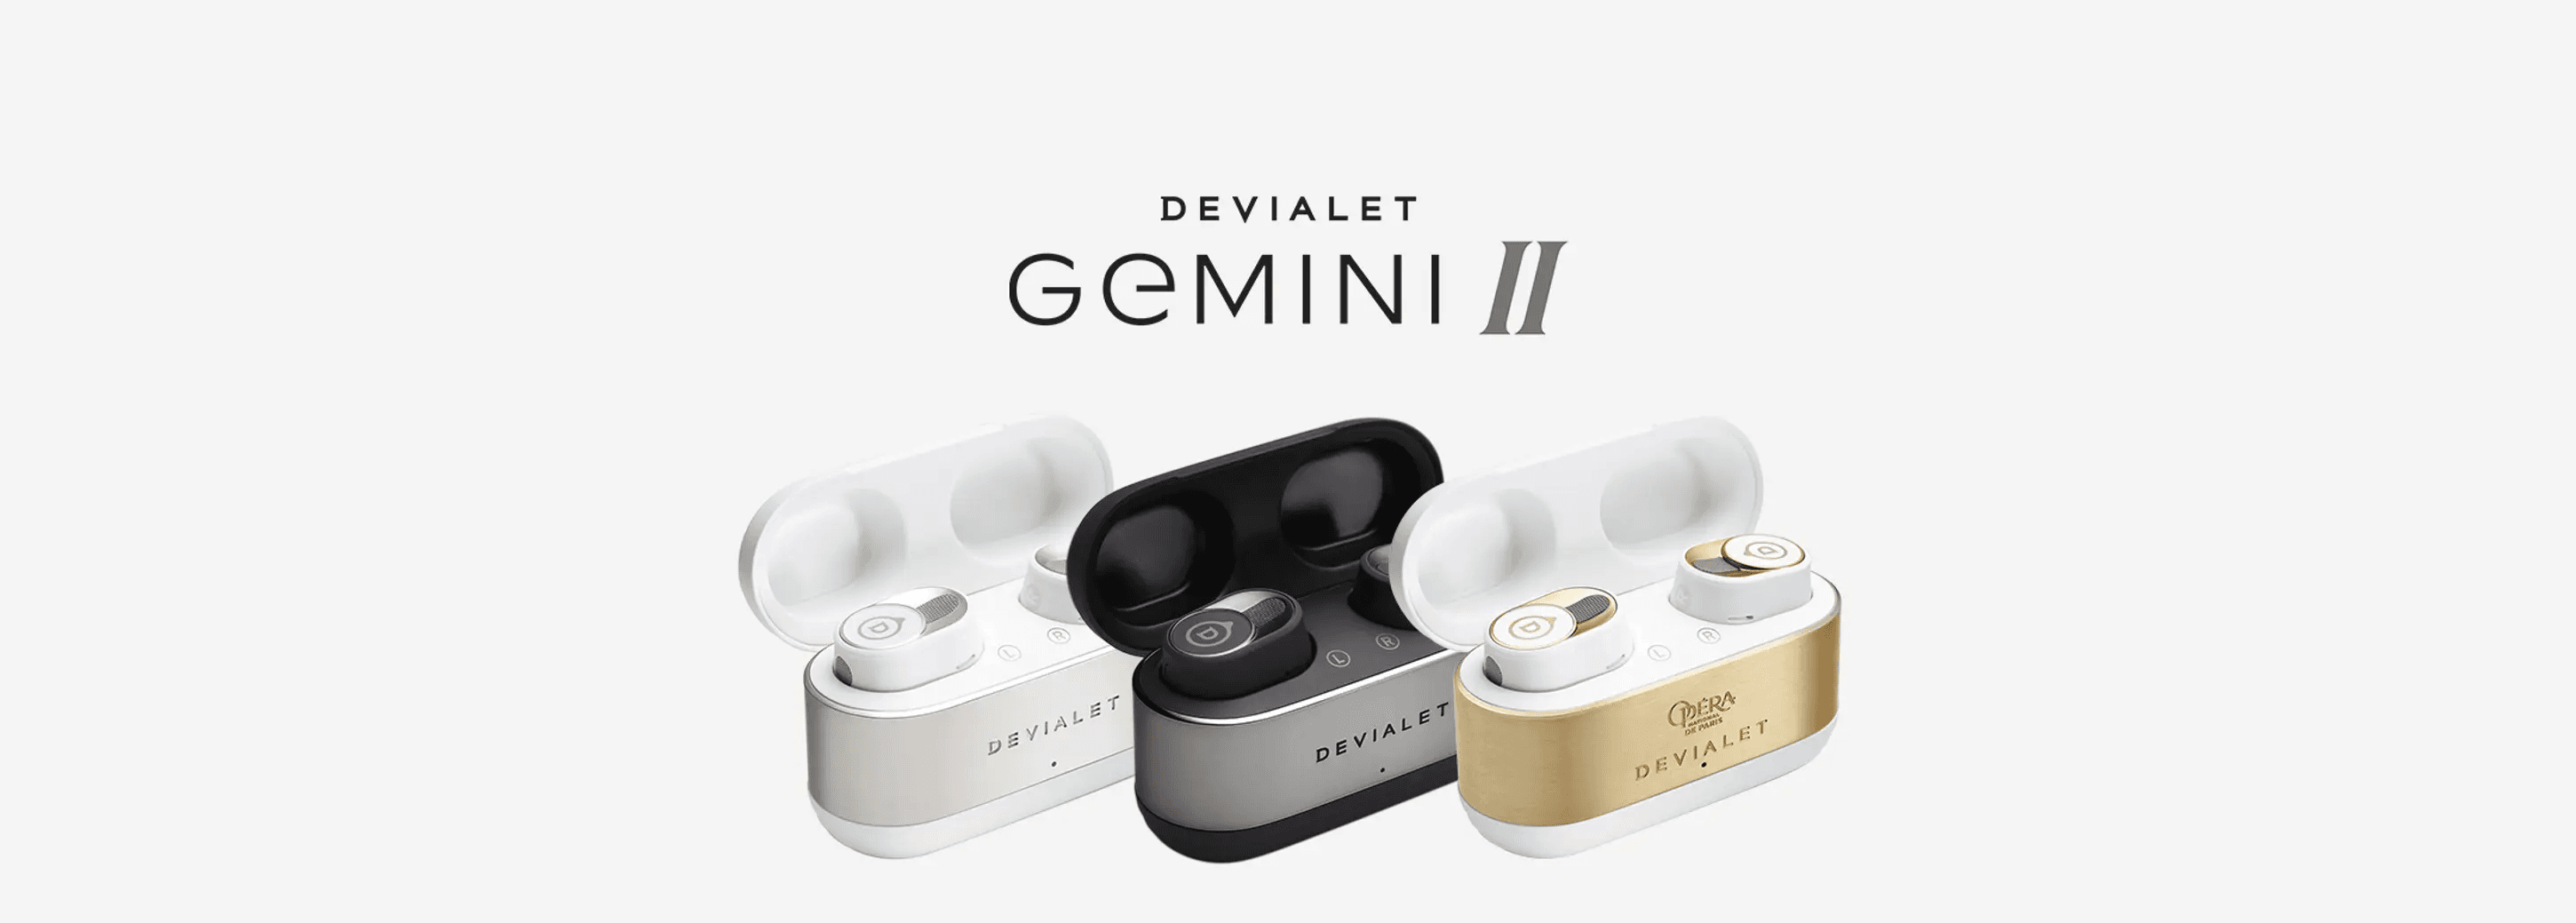 Devialet Gemini II - High-End Wireless Earbuds | Devialet KSA